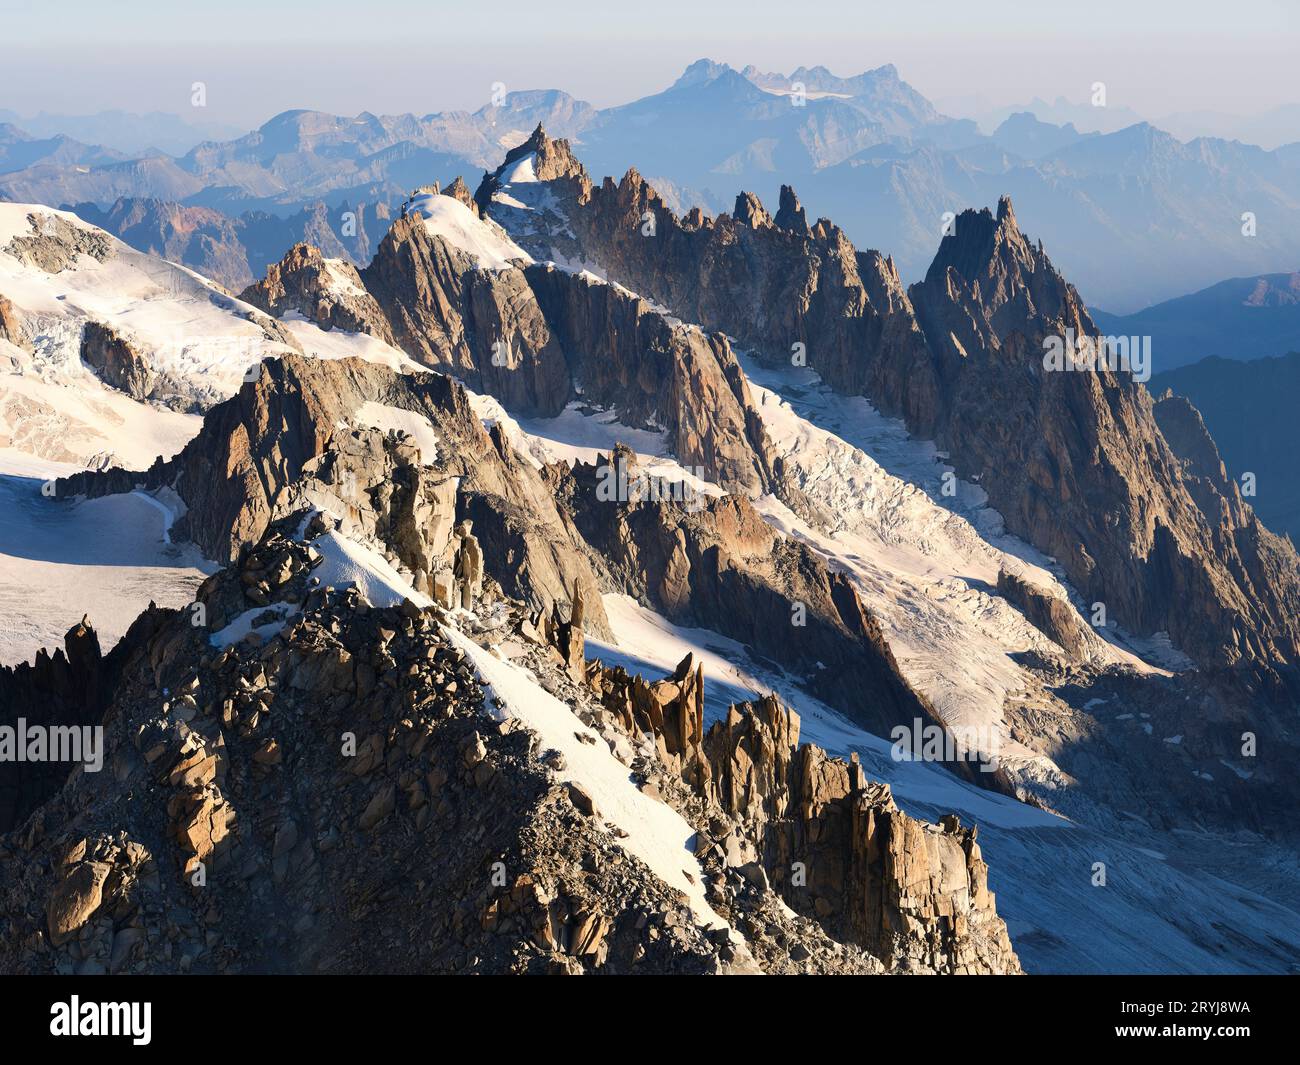 LUFTAUFNAHME. Die zerklüfteten Felsformationen von La Tour Ronde, Gros Rognon und Aiguilles de Chamonix Mont Blanc. Haute-Savoie, Frankreich. Stockfoto